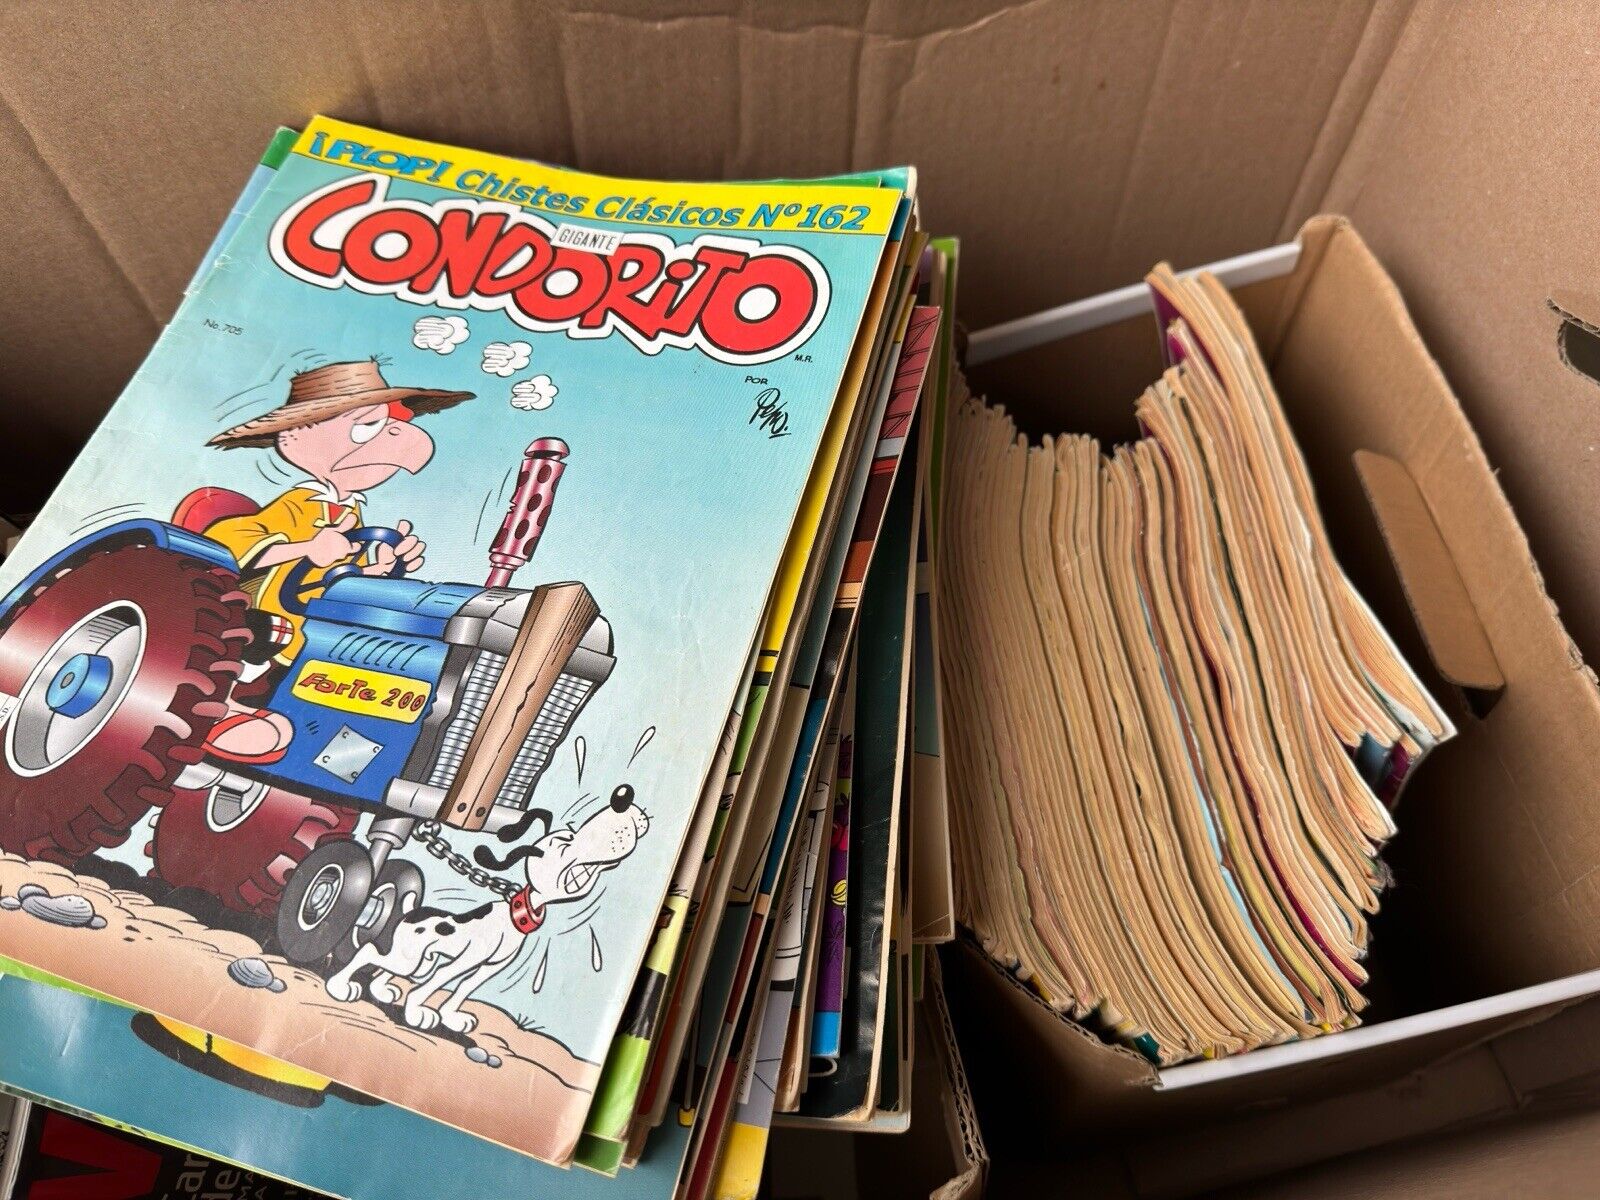 BIG LOT OF CONDORITO COMIC BOOKS Chilean mexican Vitange